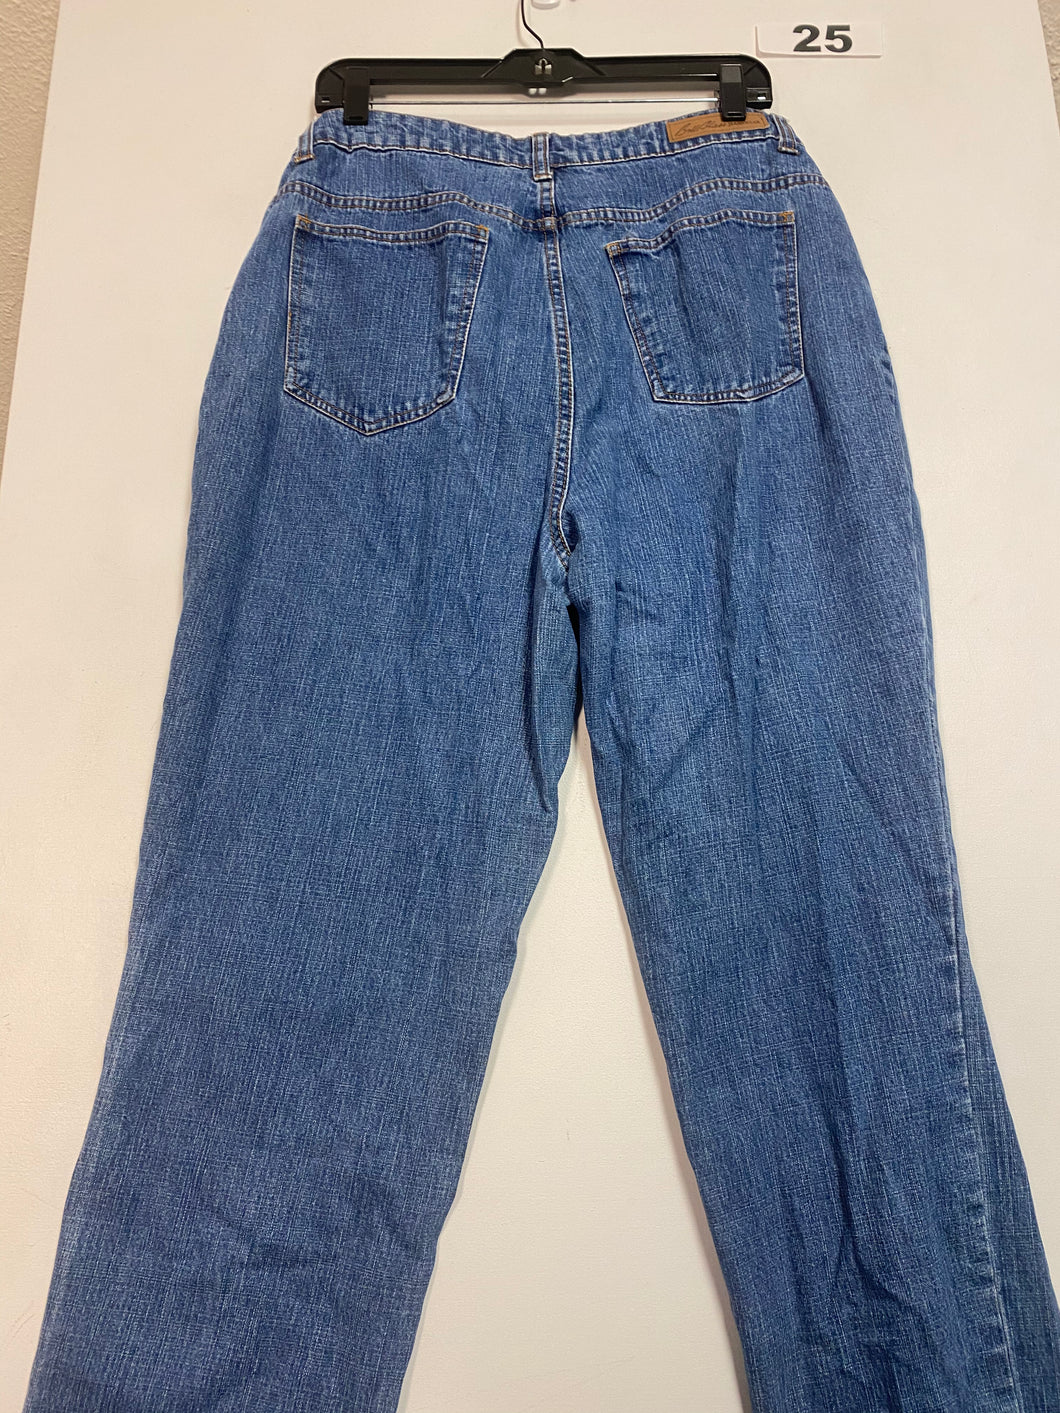 Women’s 14 Bill Blass Jeans